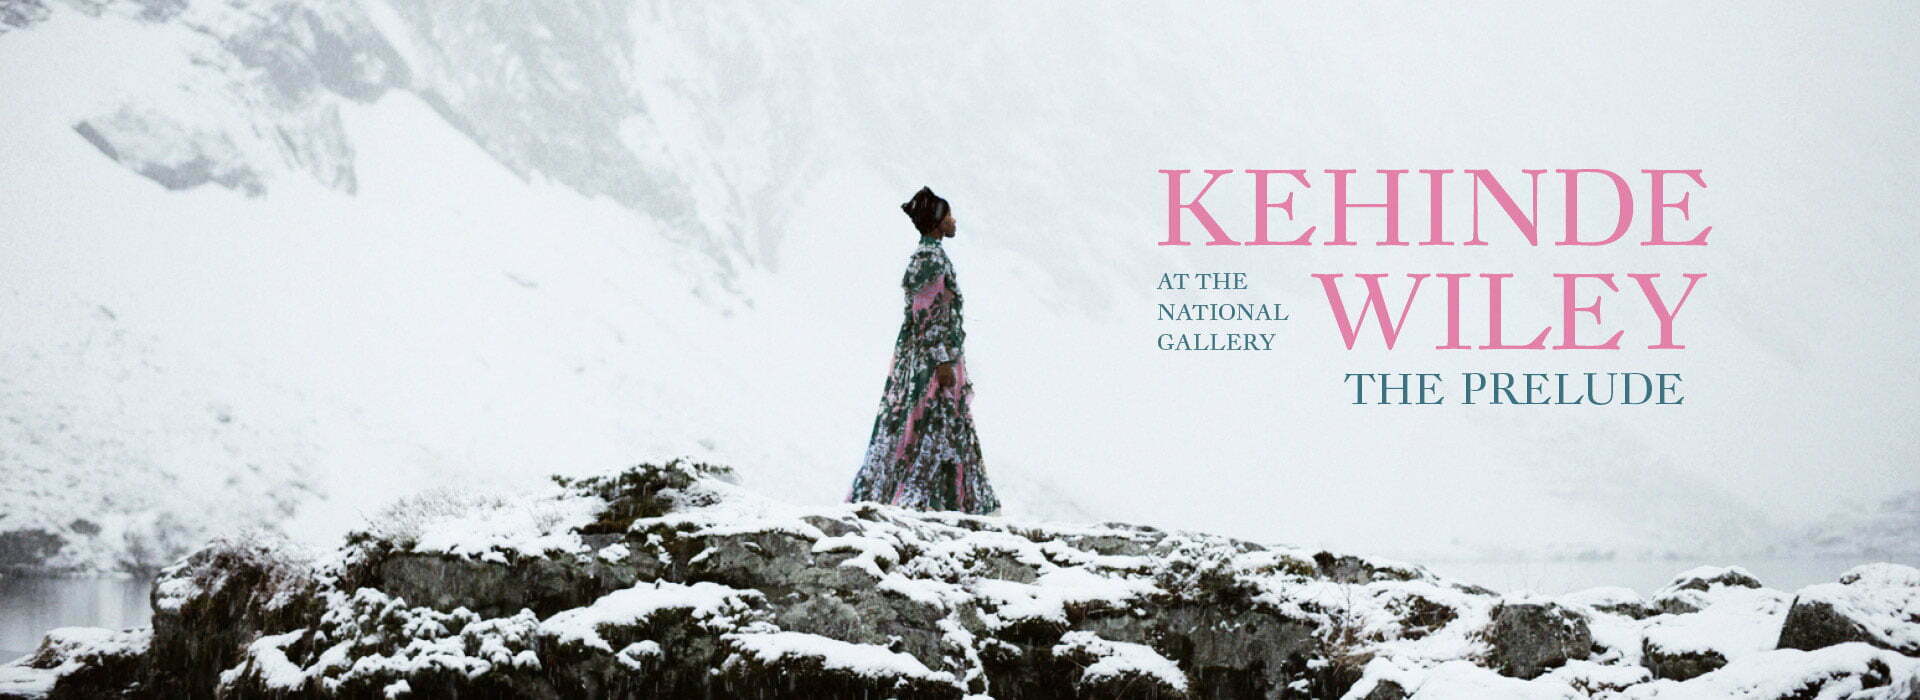 Lucrări semnate de Kehinde Wiley pot fi admirate la National Gallery din Londra, până în primăvara anului viitor